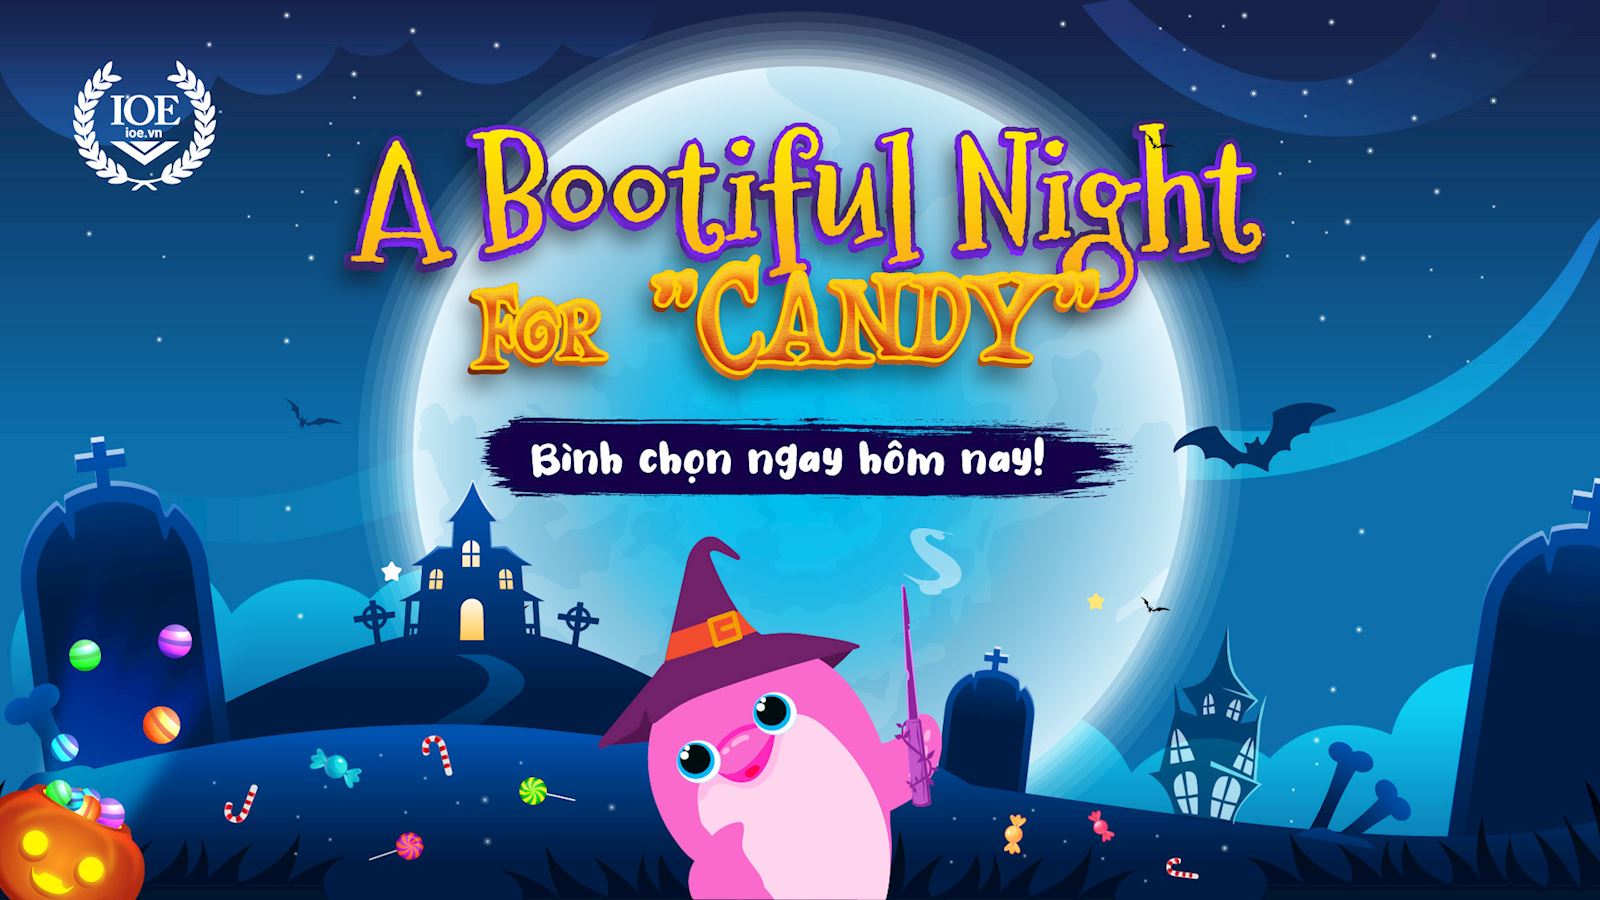 Halloween: A Bootiful Night For "Candy" - Bình chọn ngay hôm nay!